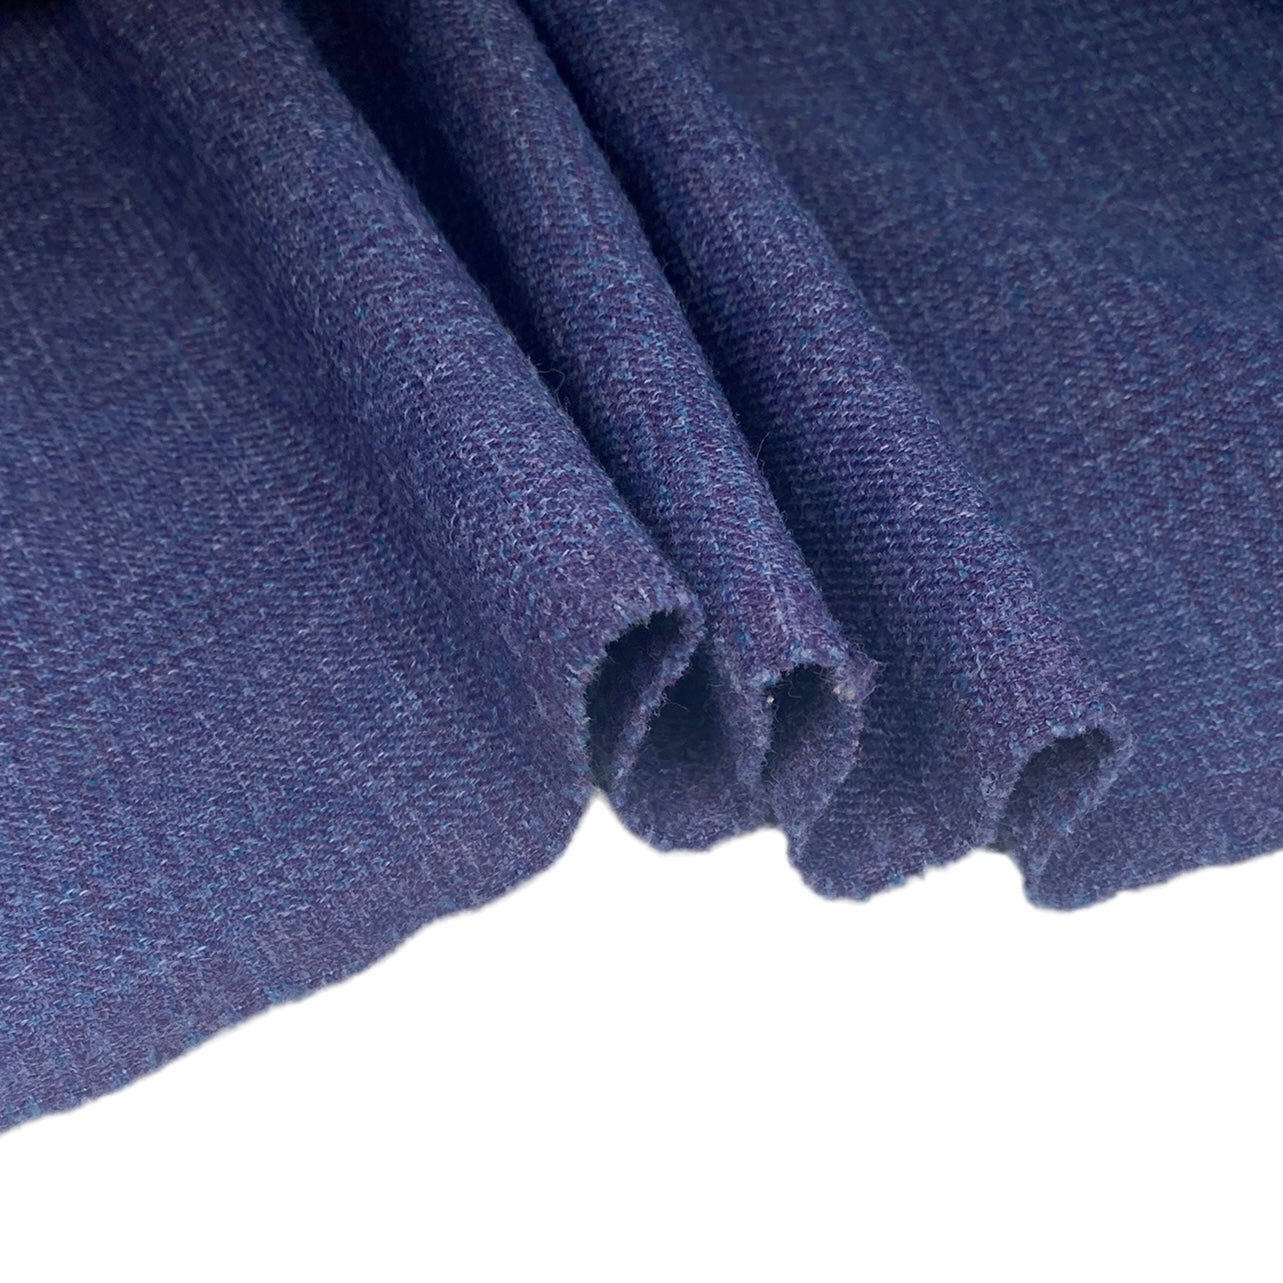 Wool Plaid - Purple/Blue